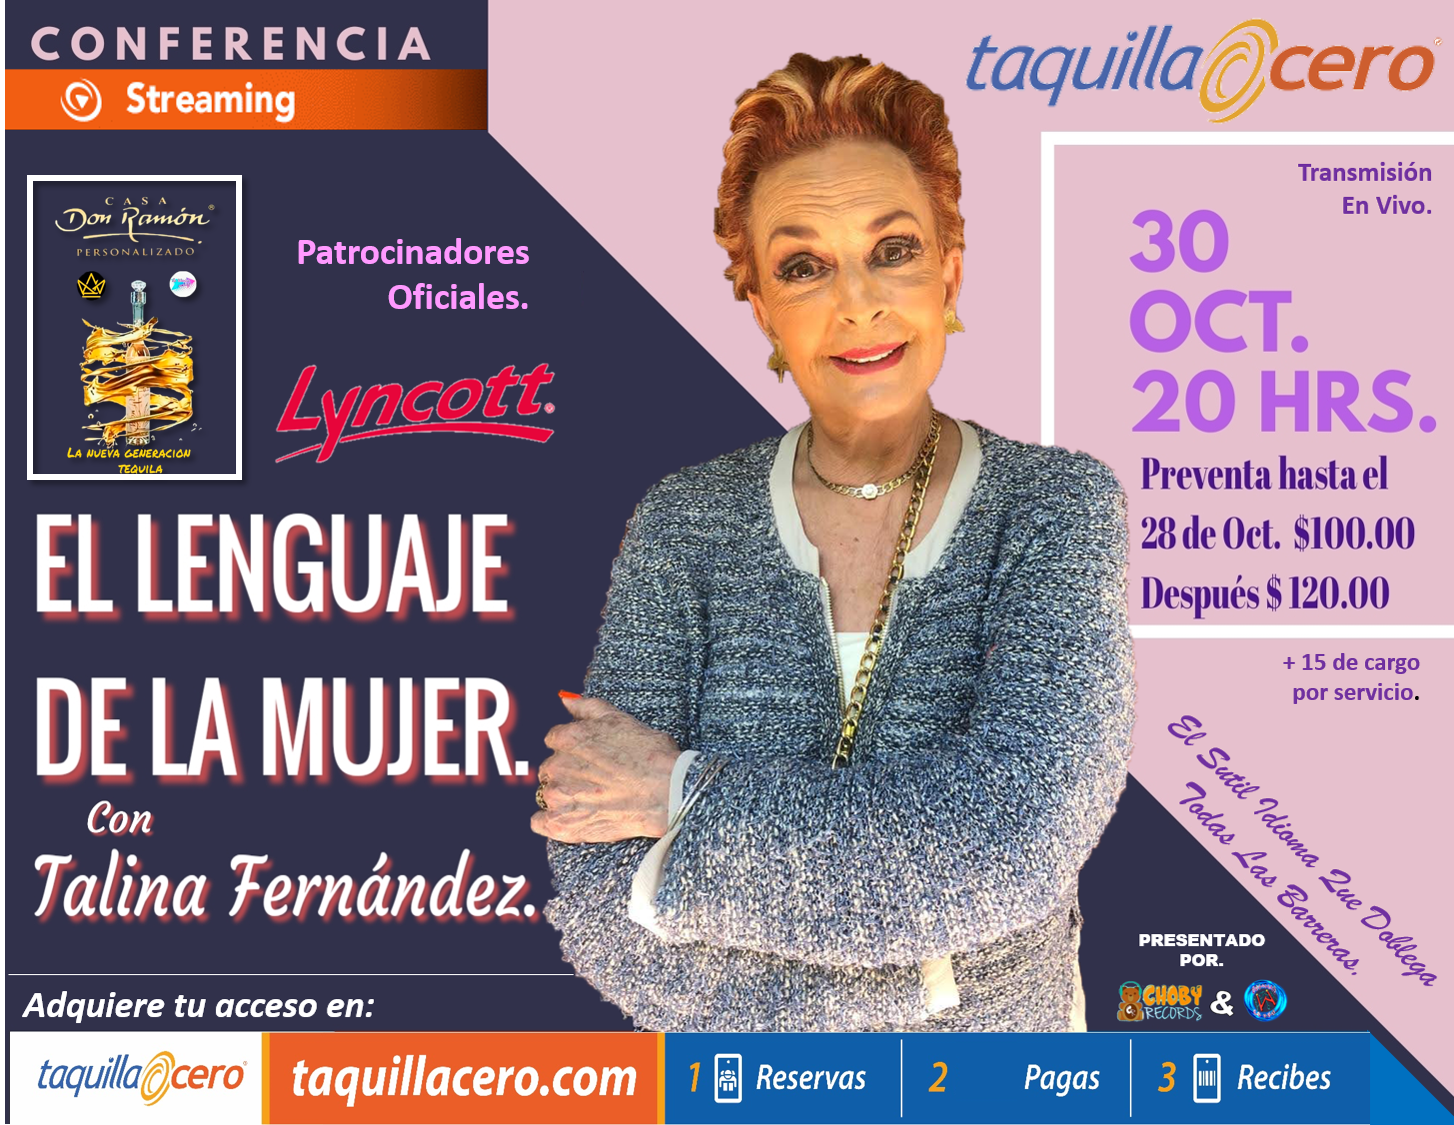 “El lenguaje de la mujer”: Talina Fernández dará conferencia vía streaming